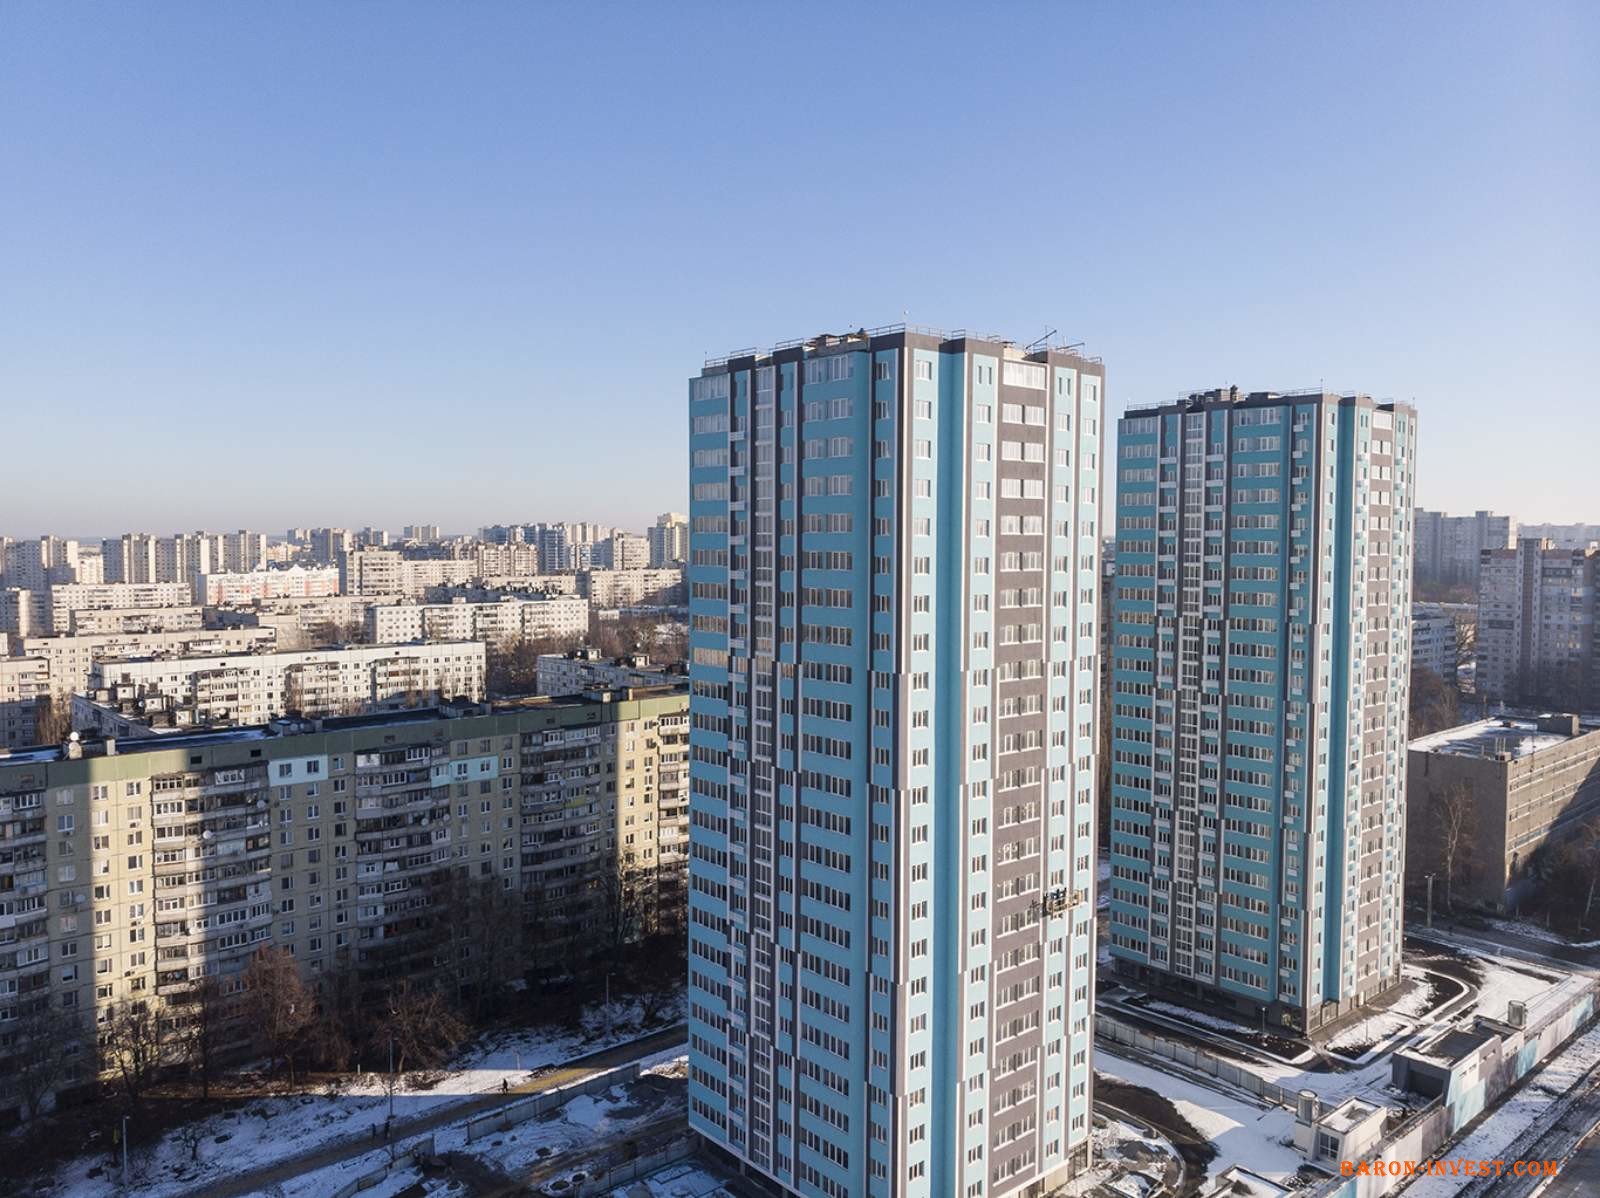 Продам свой участок Одесса Малиновский р-н Ул Гастелло/Щорса продам 53 сотки под строительство высотных домов. 